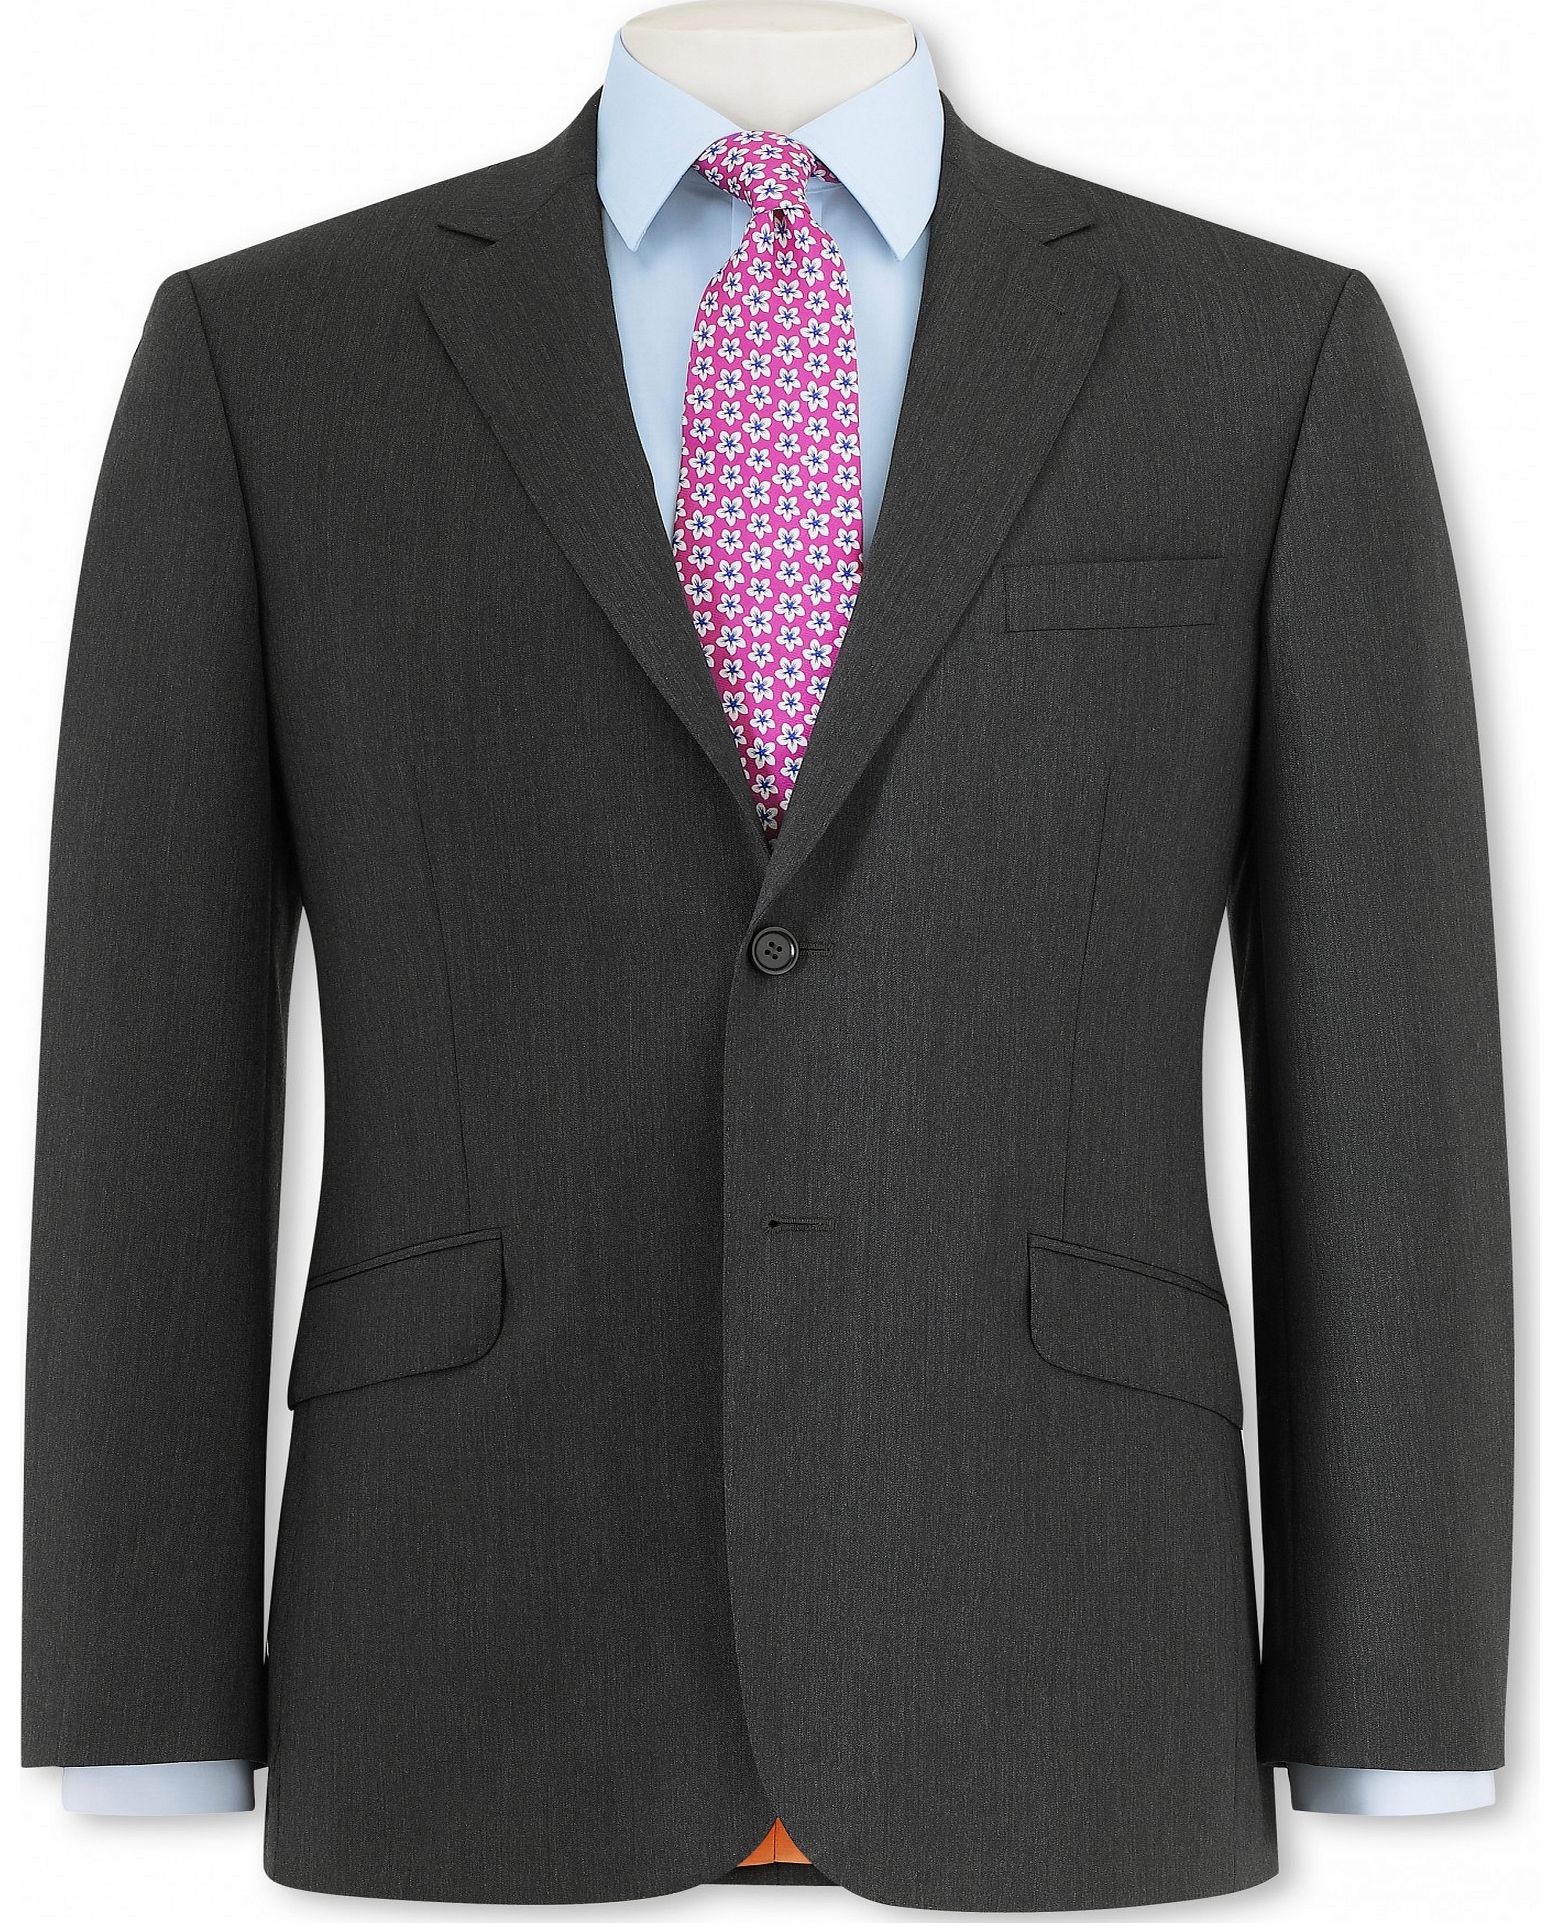 Grey Herringbone Suit Jacket 48`` Long